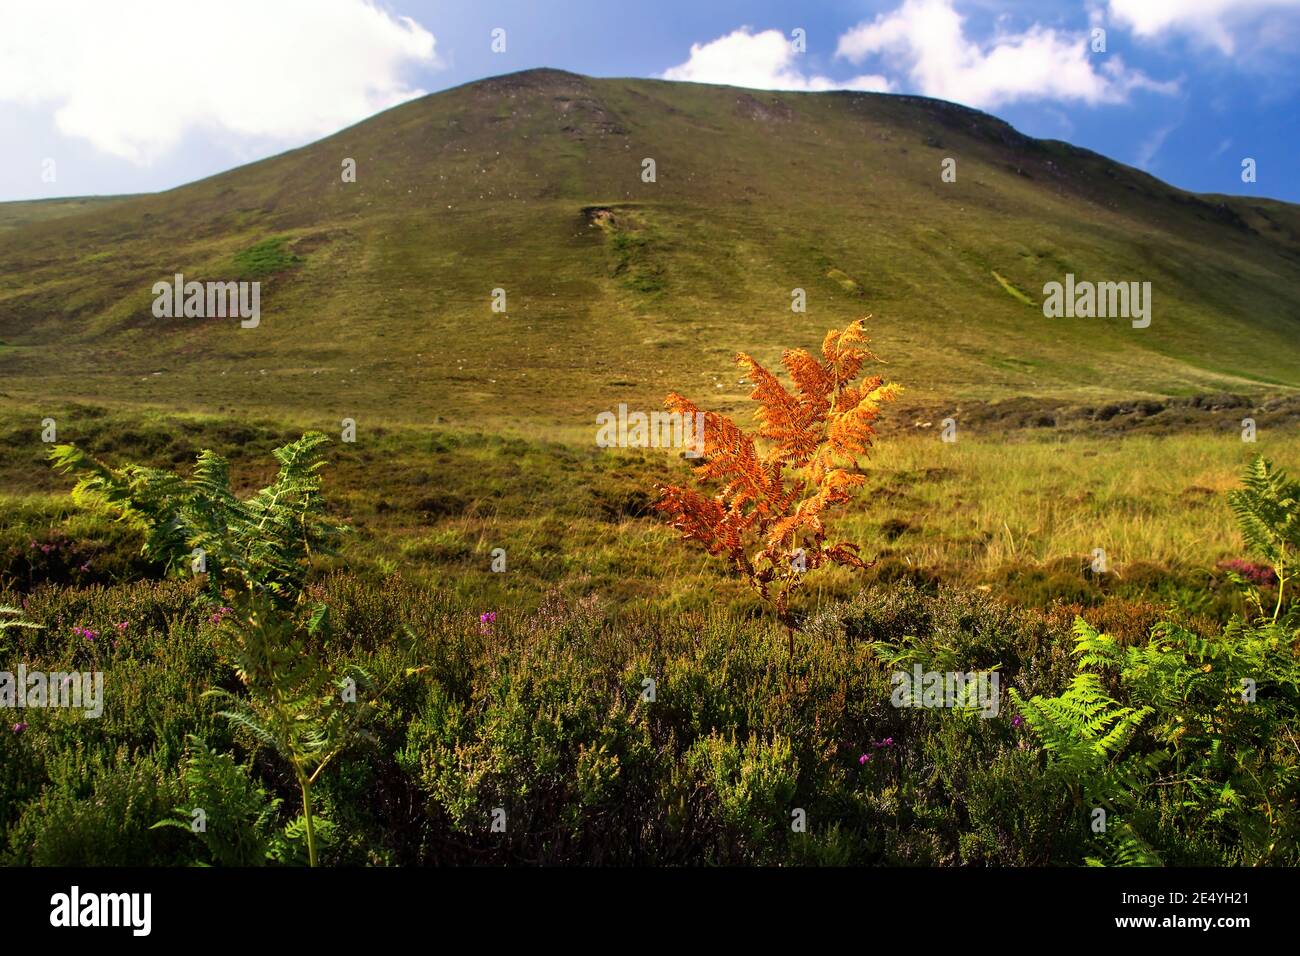 Gran colina marrón con planta de helecho naranja en primer plano y. Cielo azul con nubes blancas el día de verano en Escocia Foto de stock